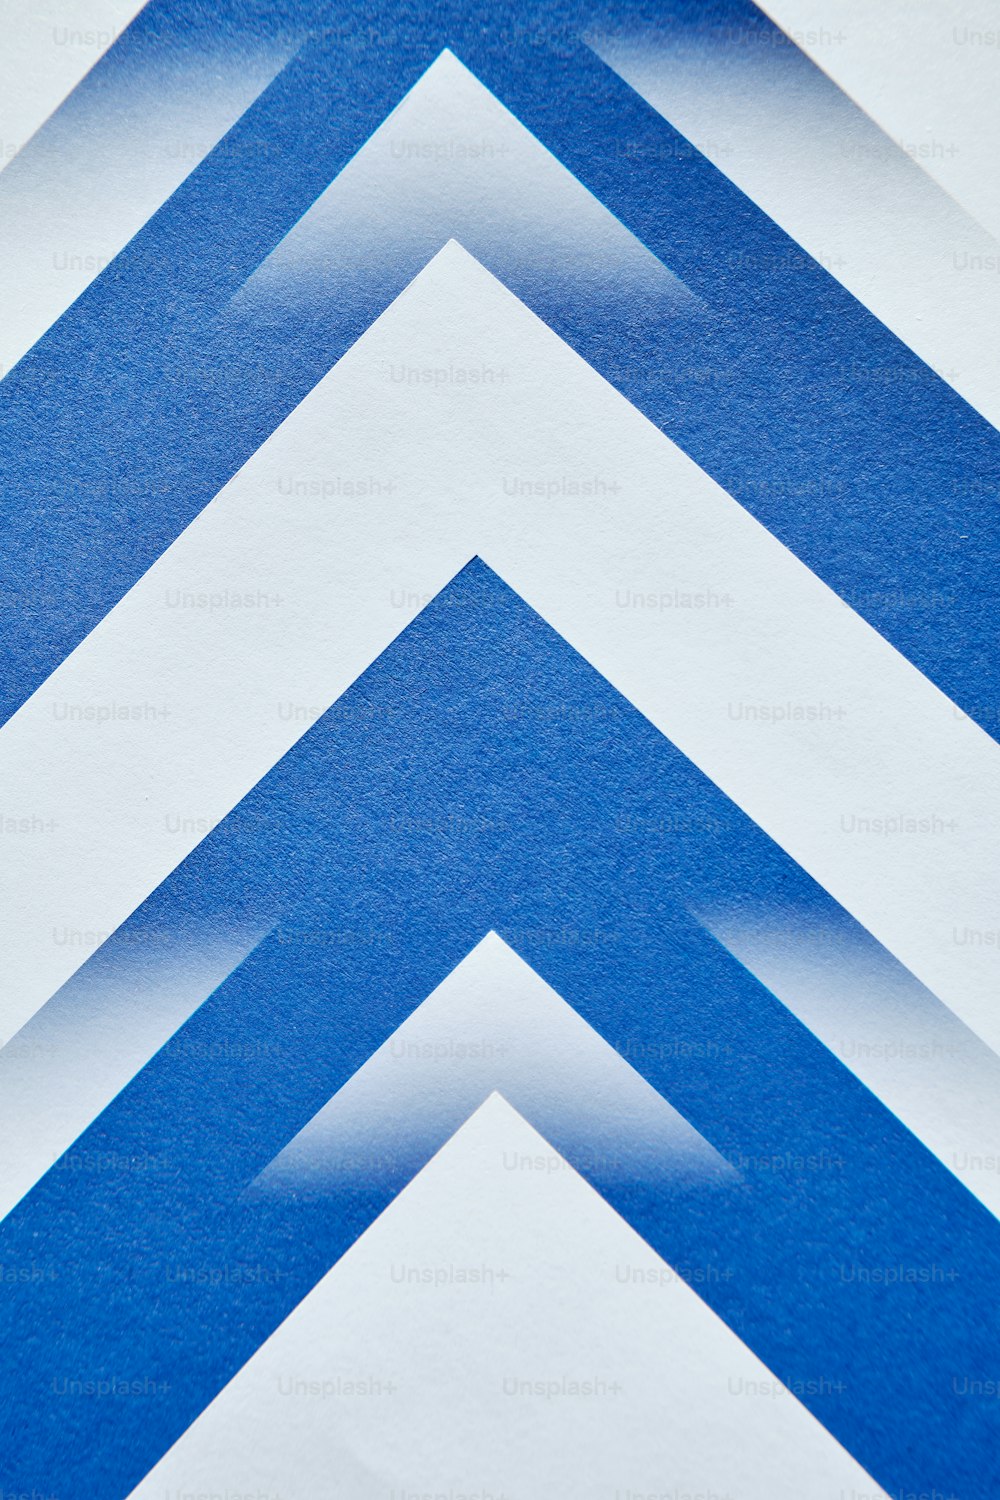 um close up de uma parede listrada azul e branca